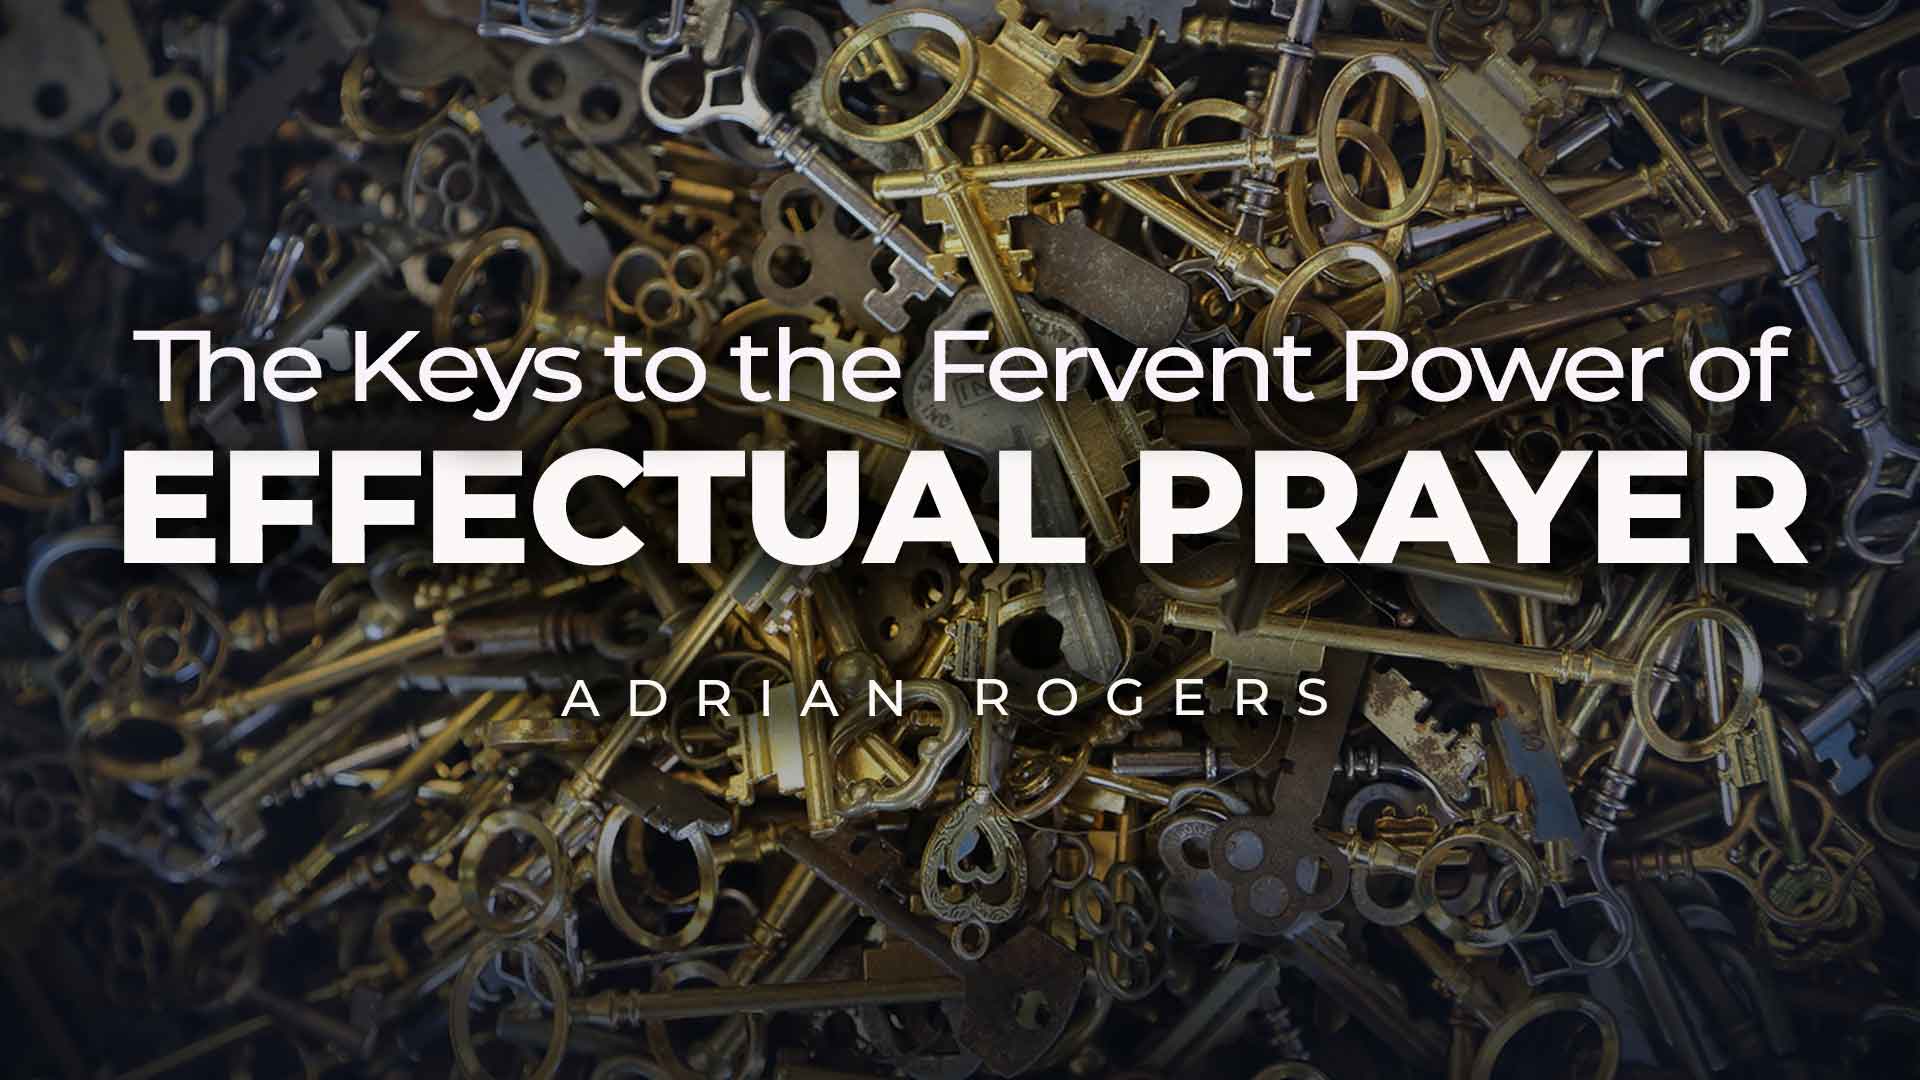 Keys Effectual Prayer 1920x1080